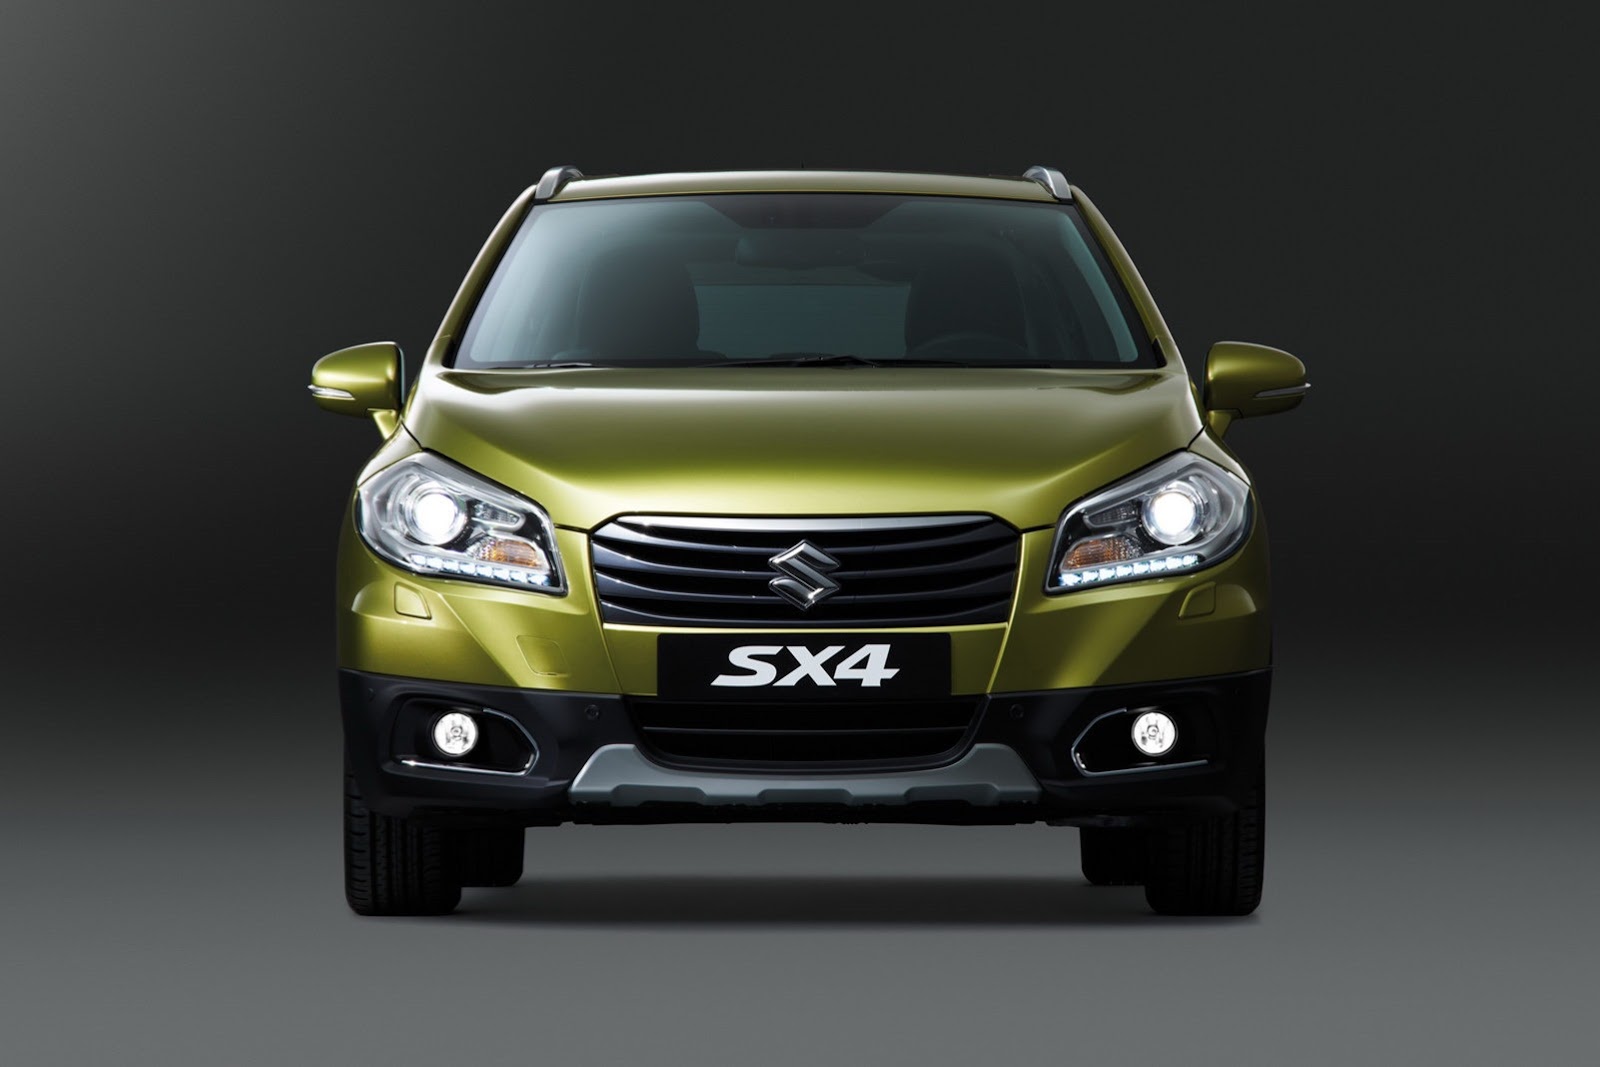 2013 Suzuki SX4 Crossover Front End View